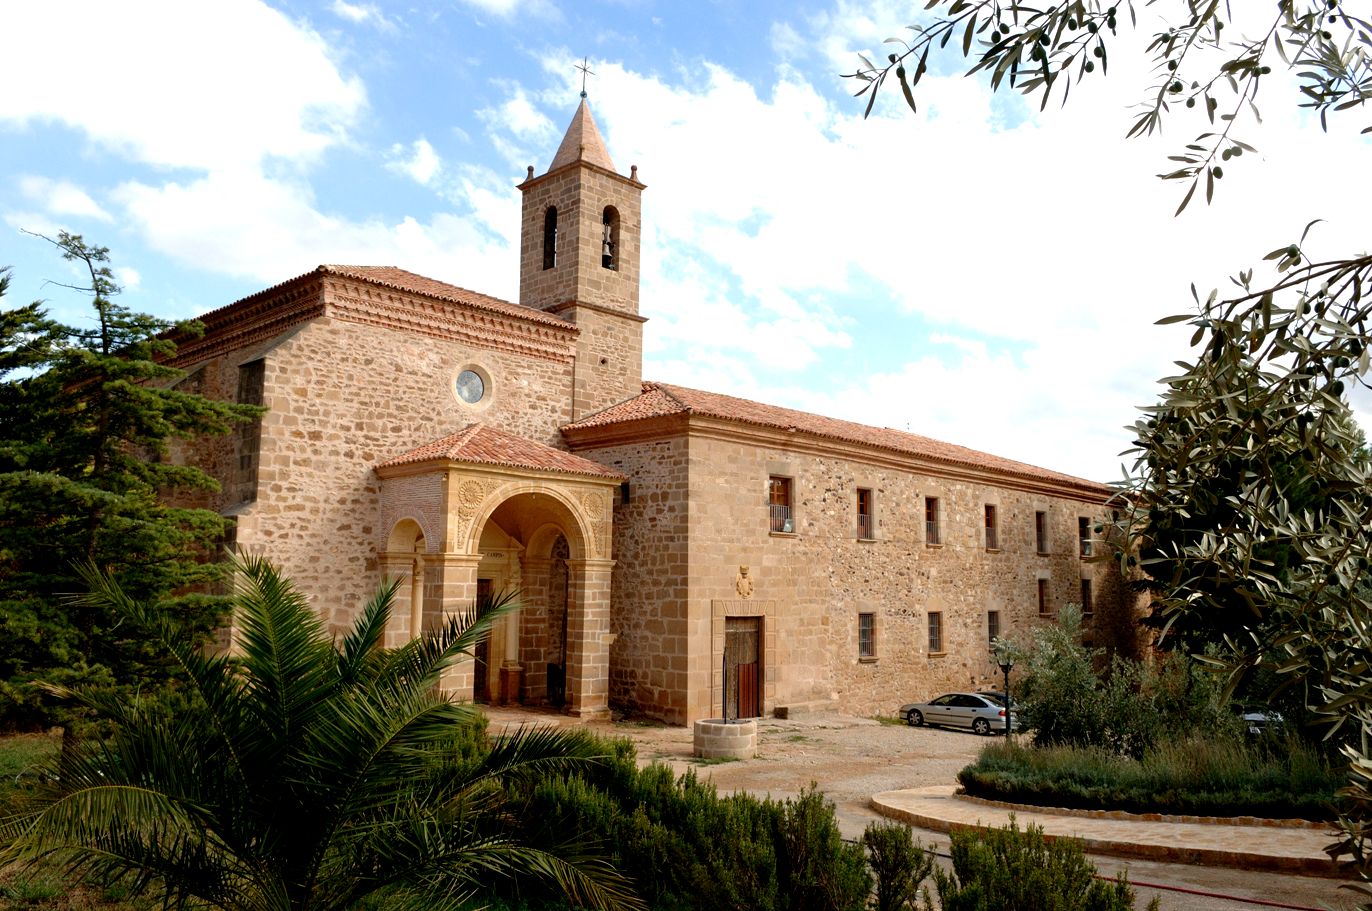 Monasterio de Ntra. Sra. del Olivar